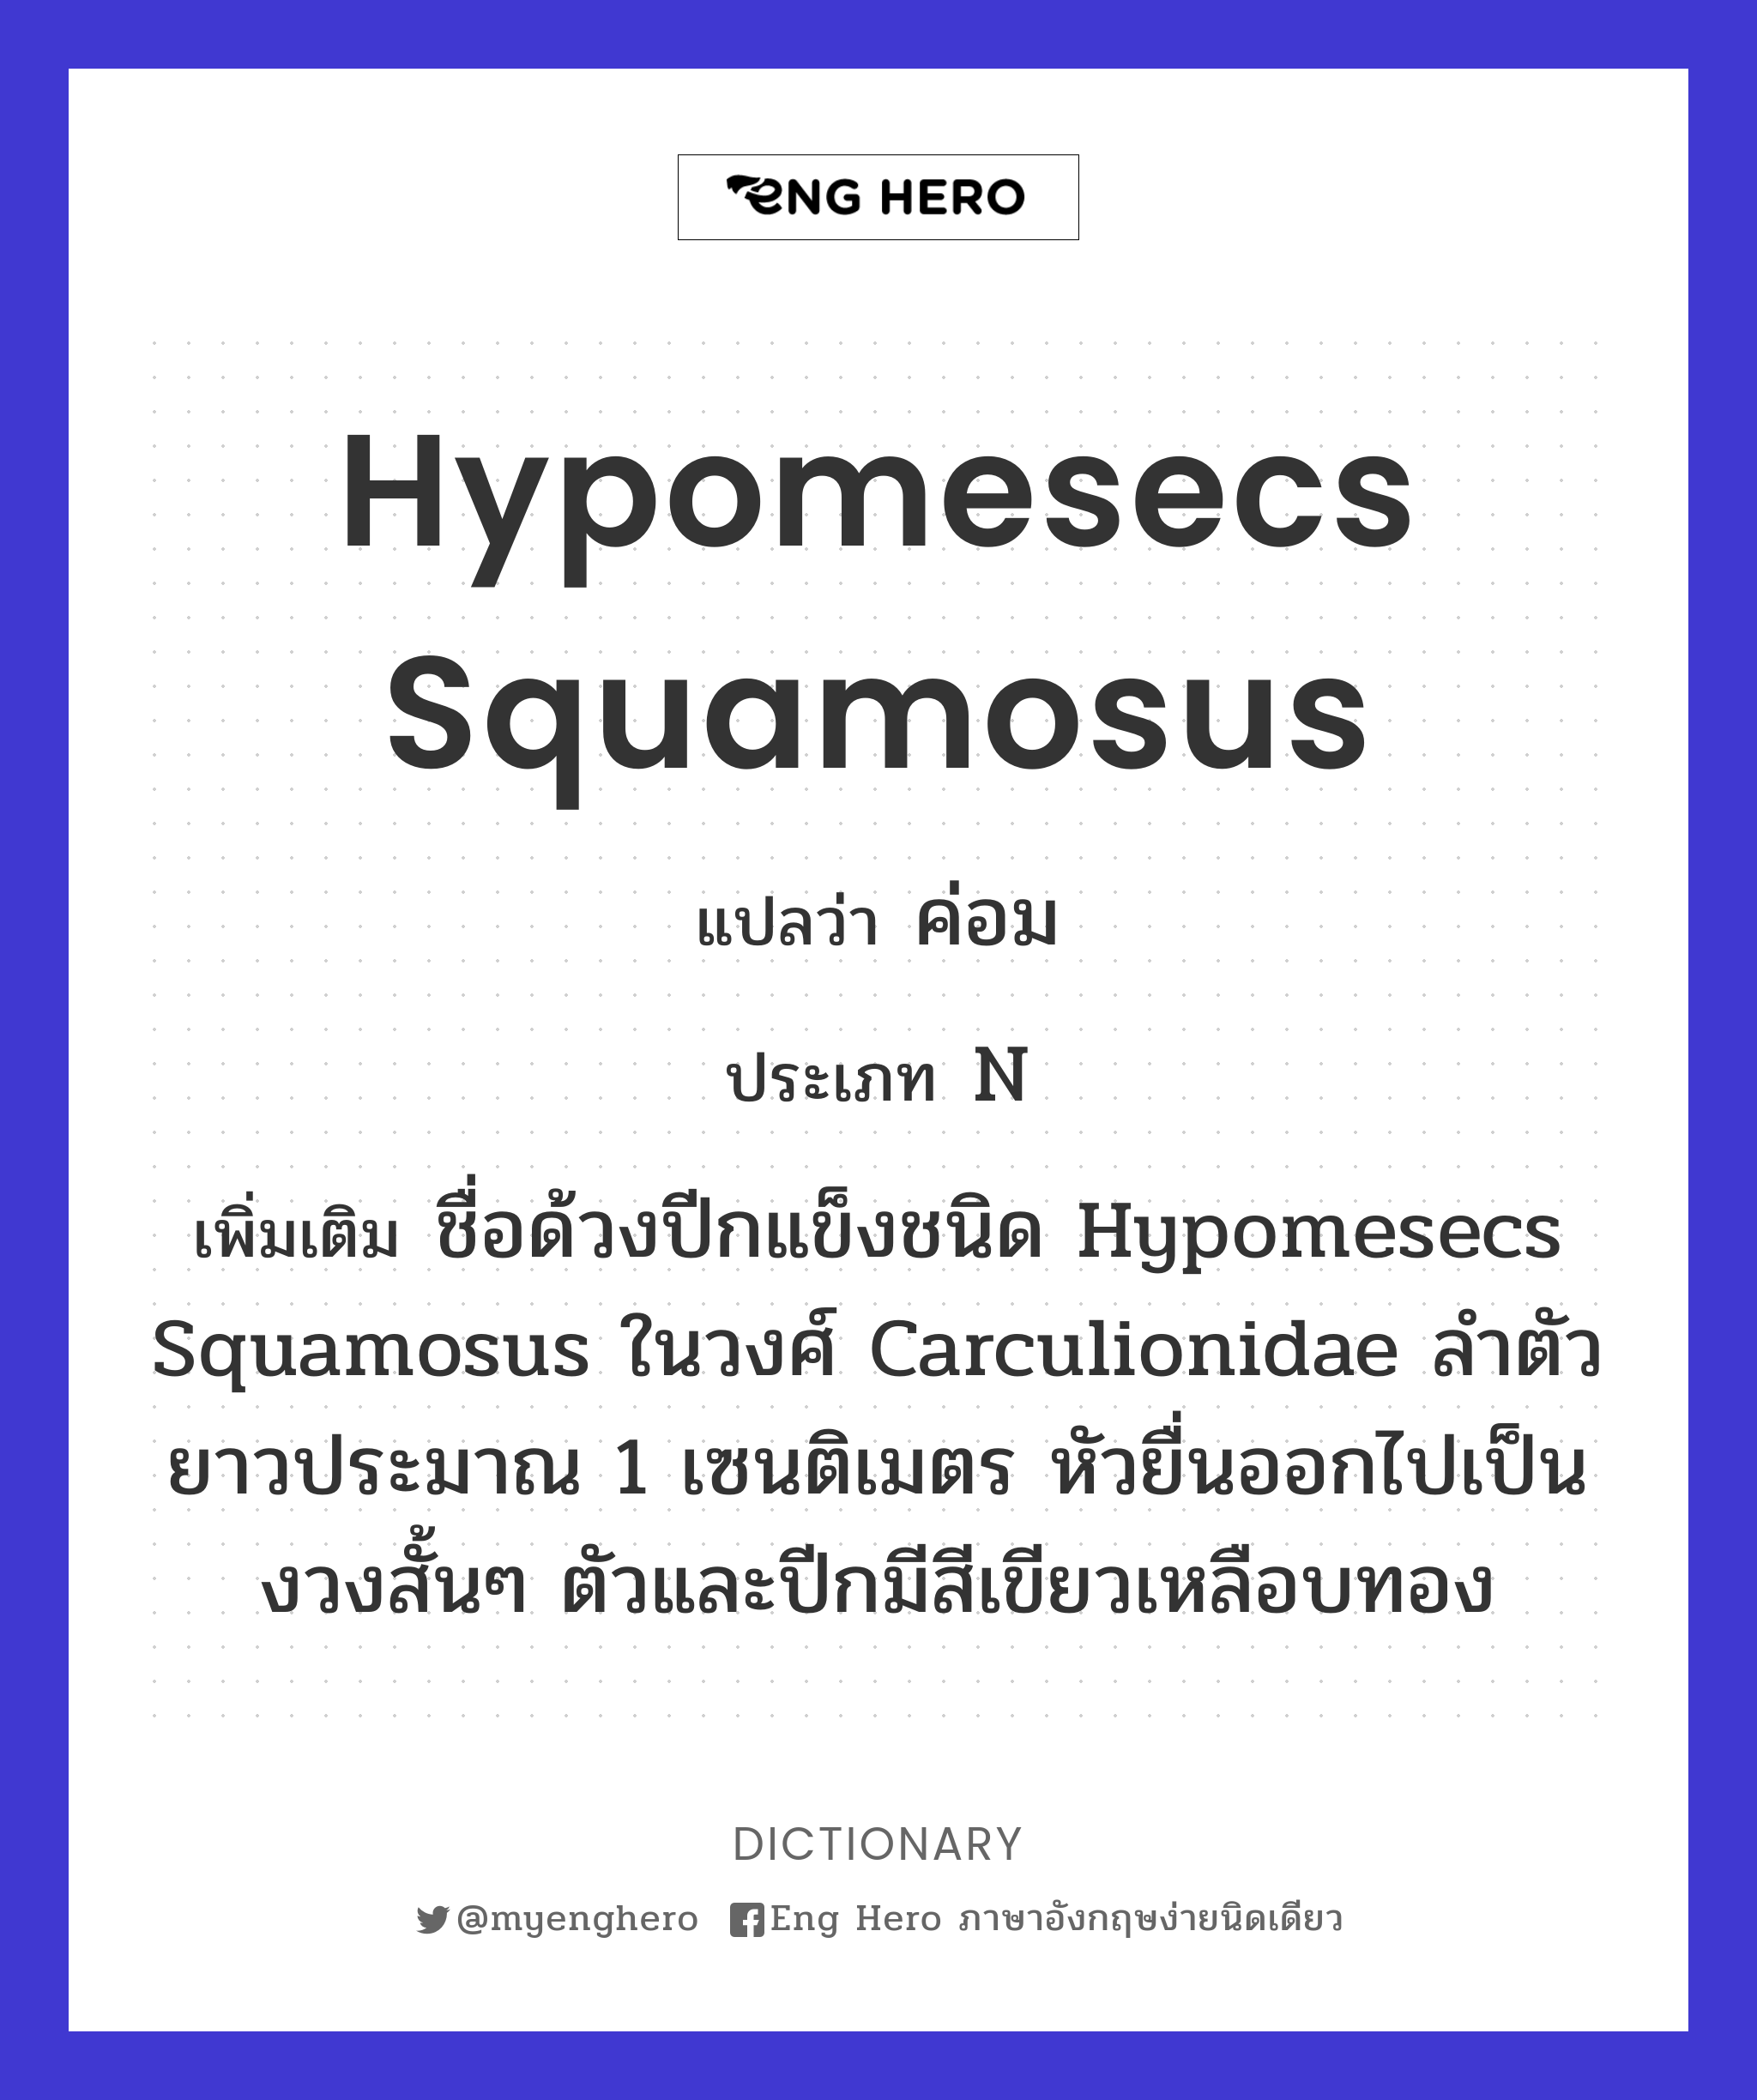 Hypomesecs squamosus